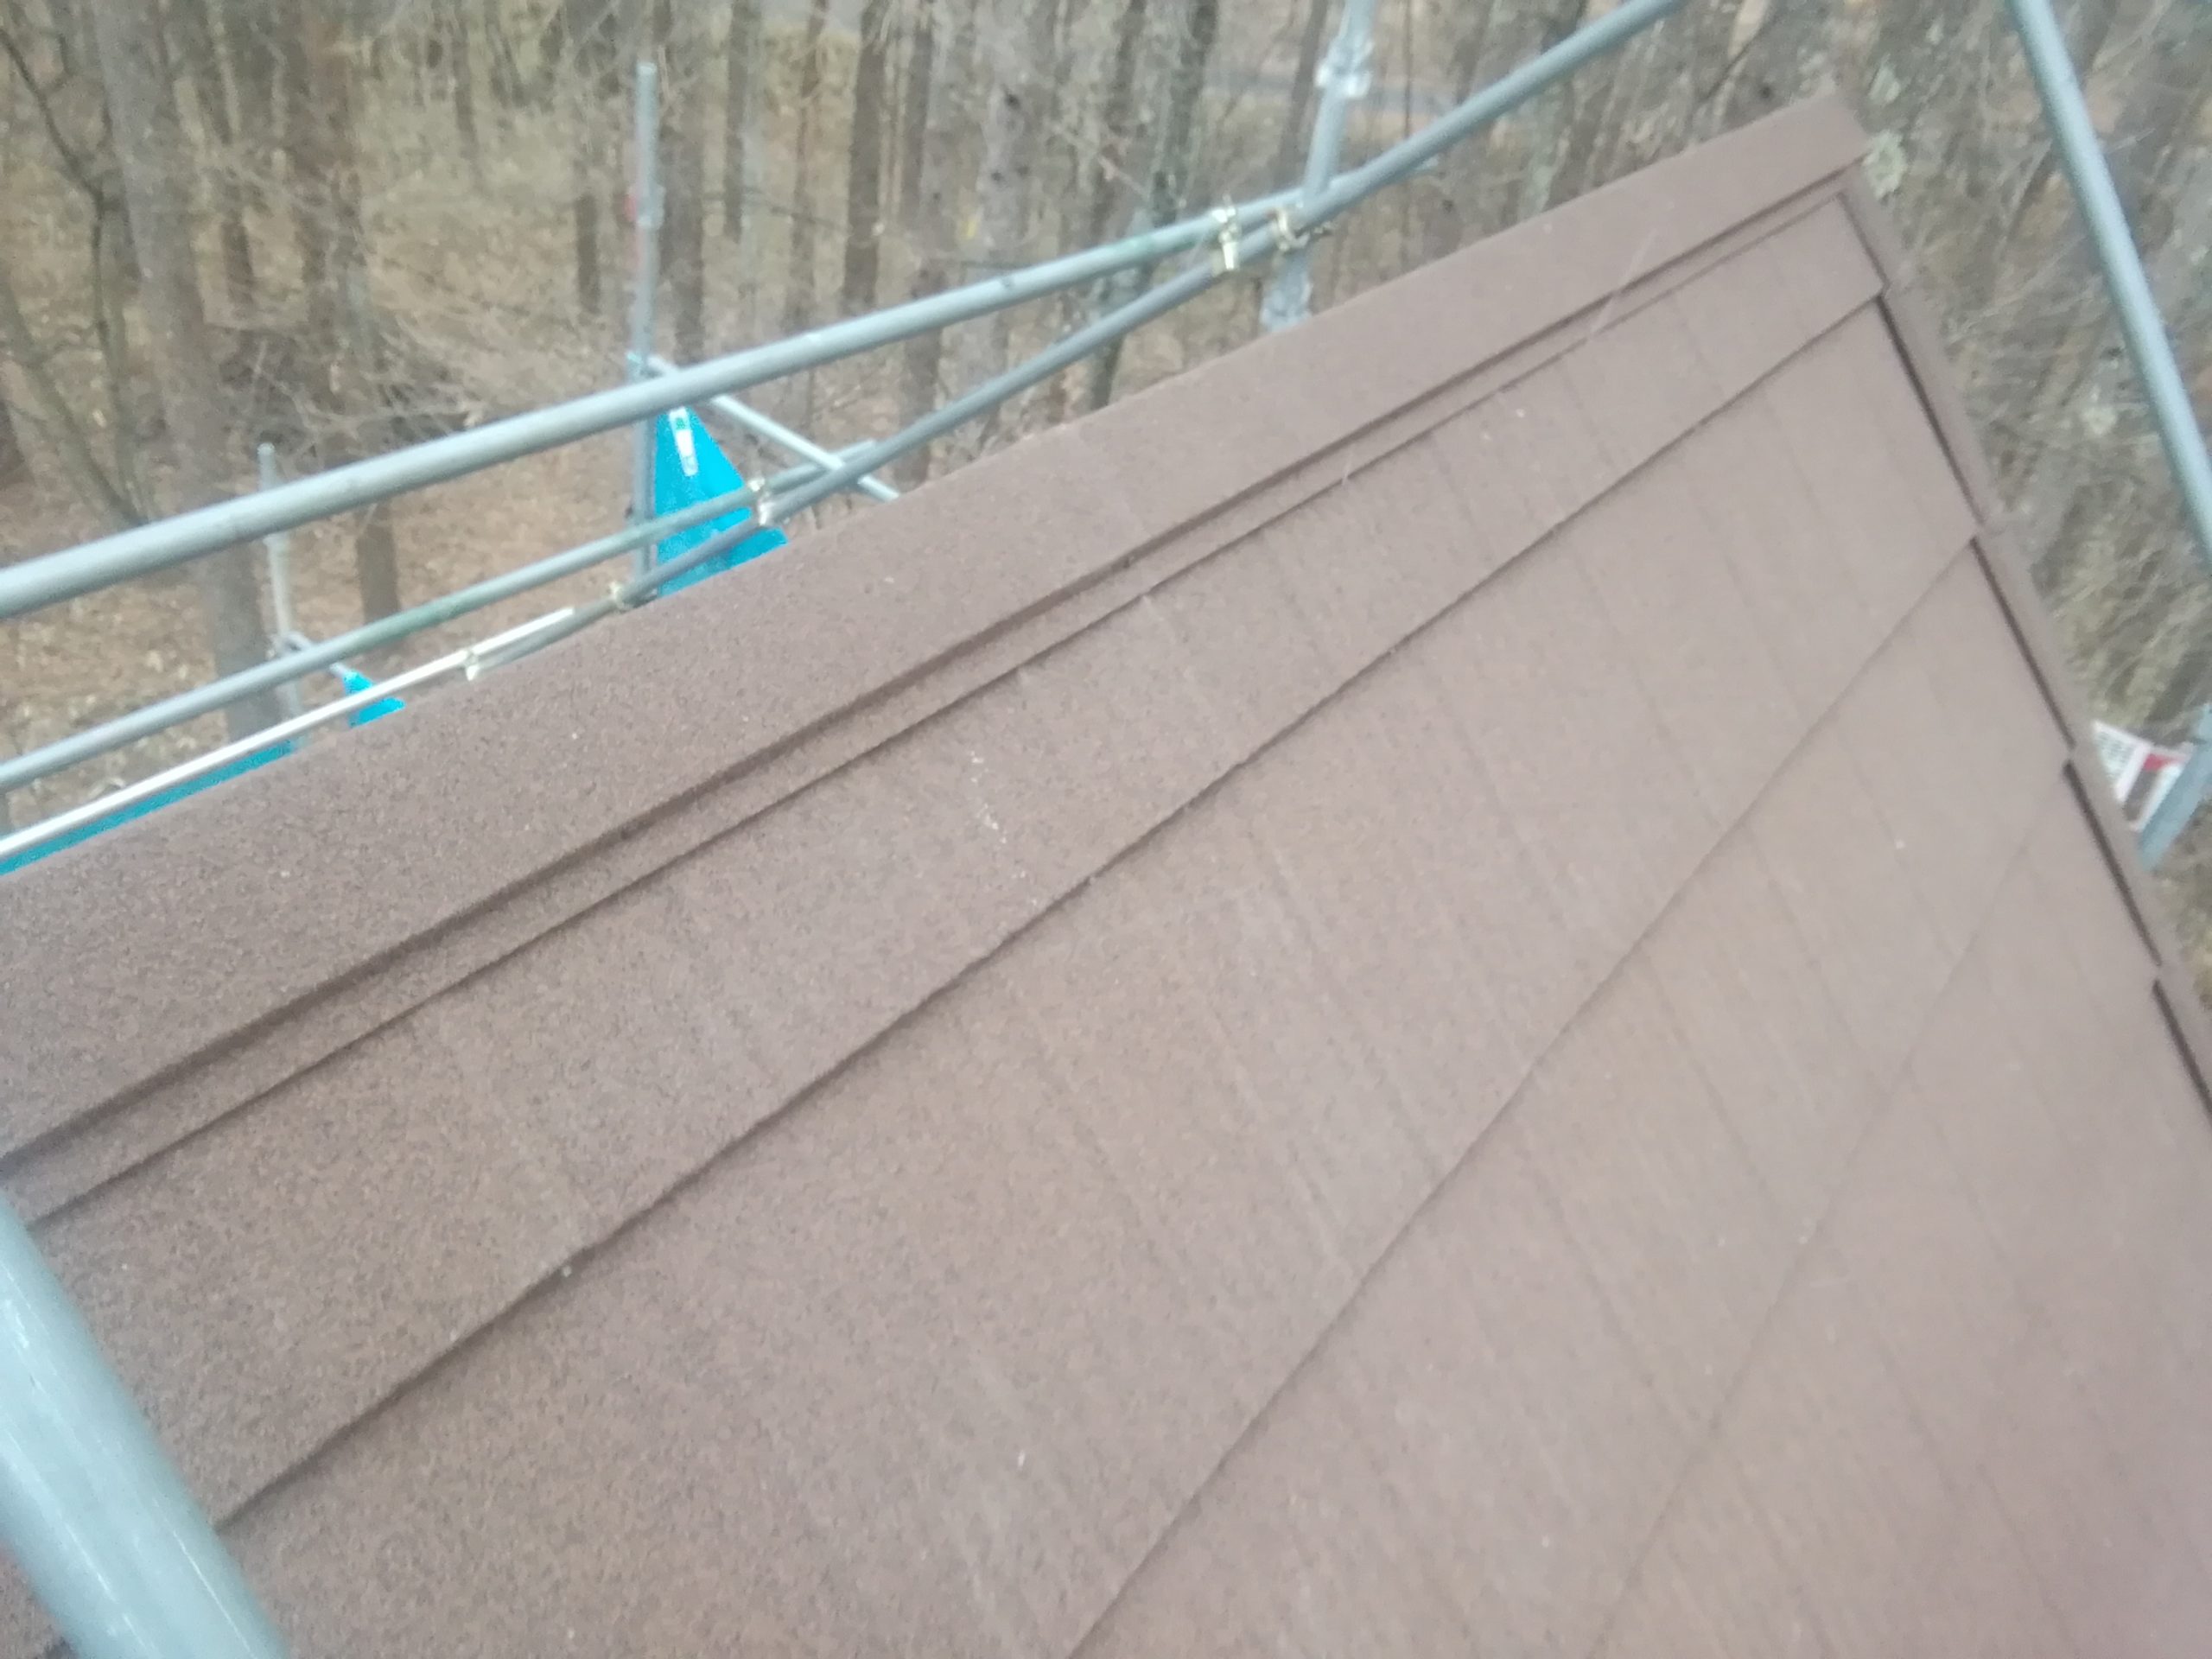 別荘屋根カバー工法